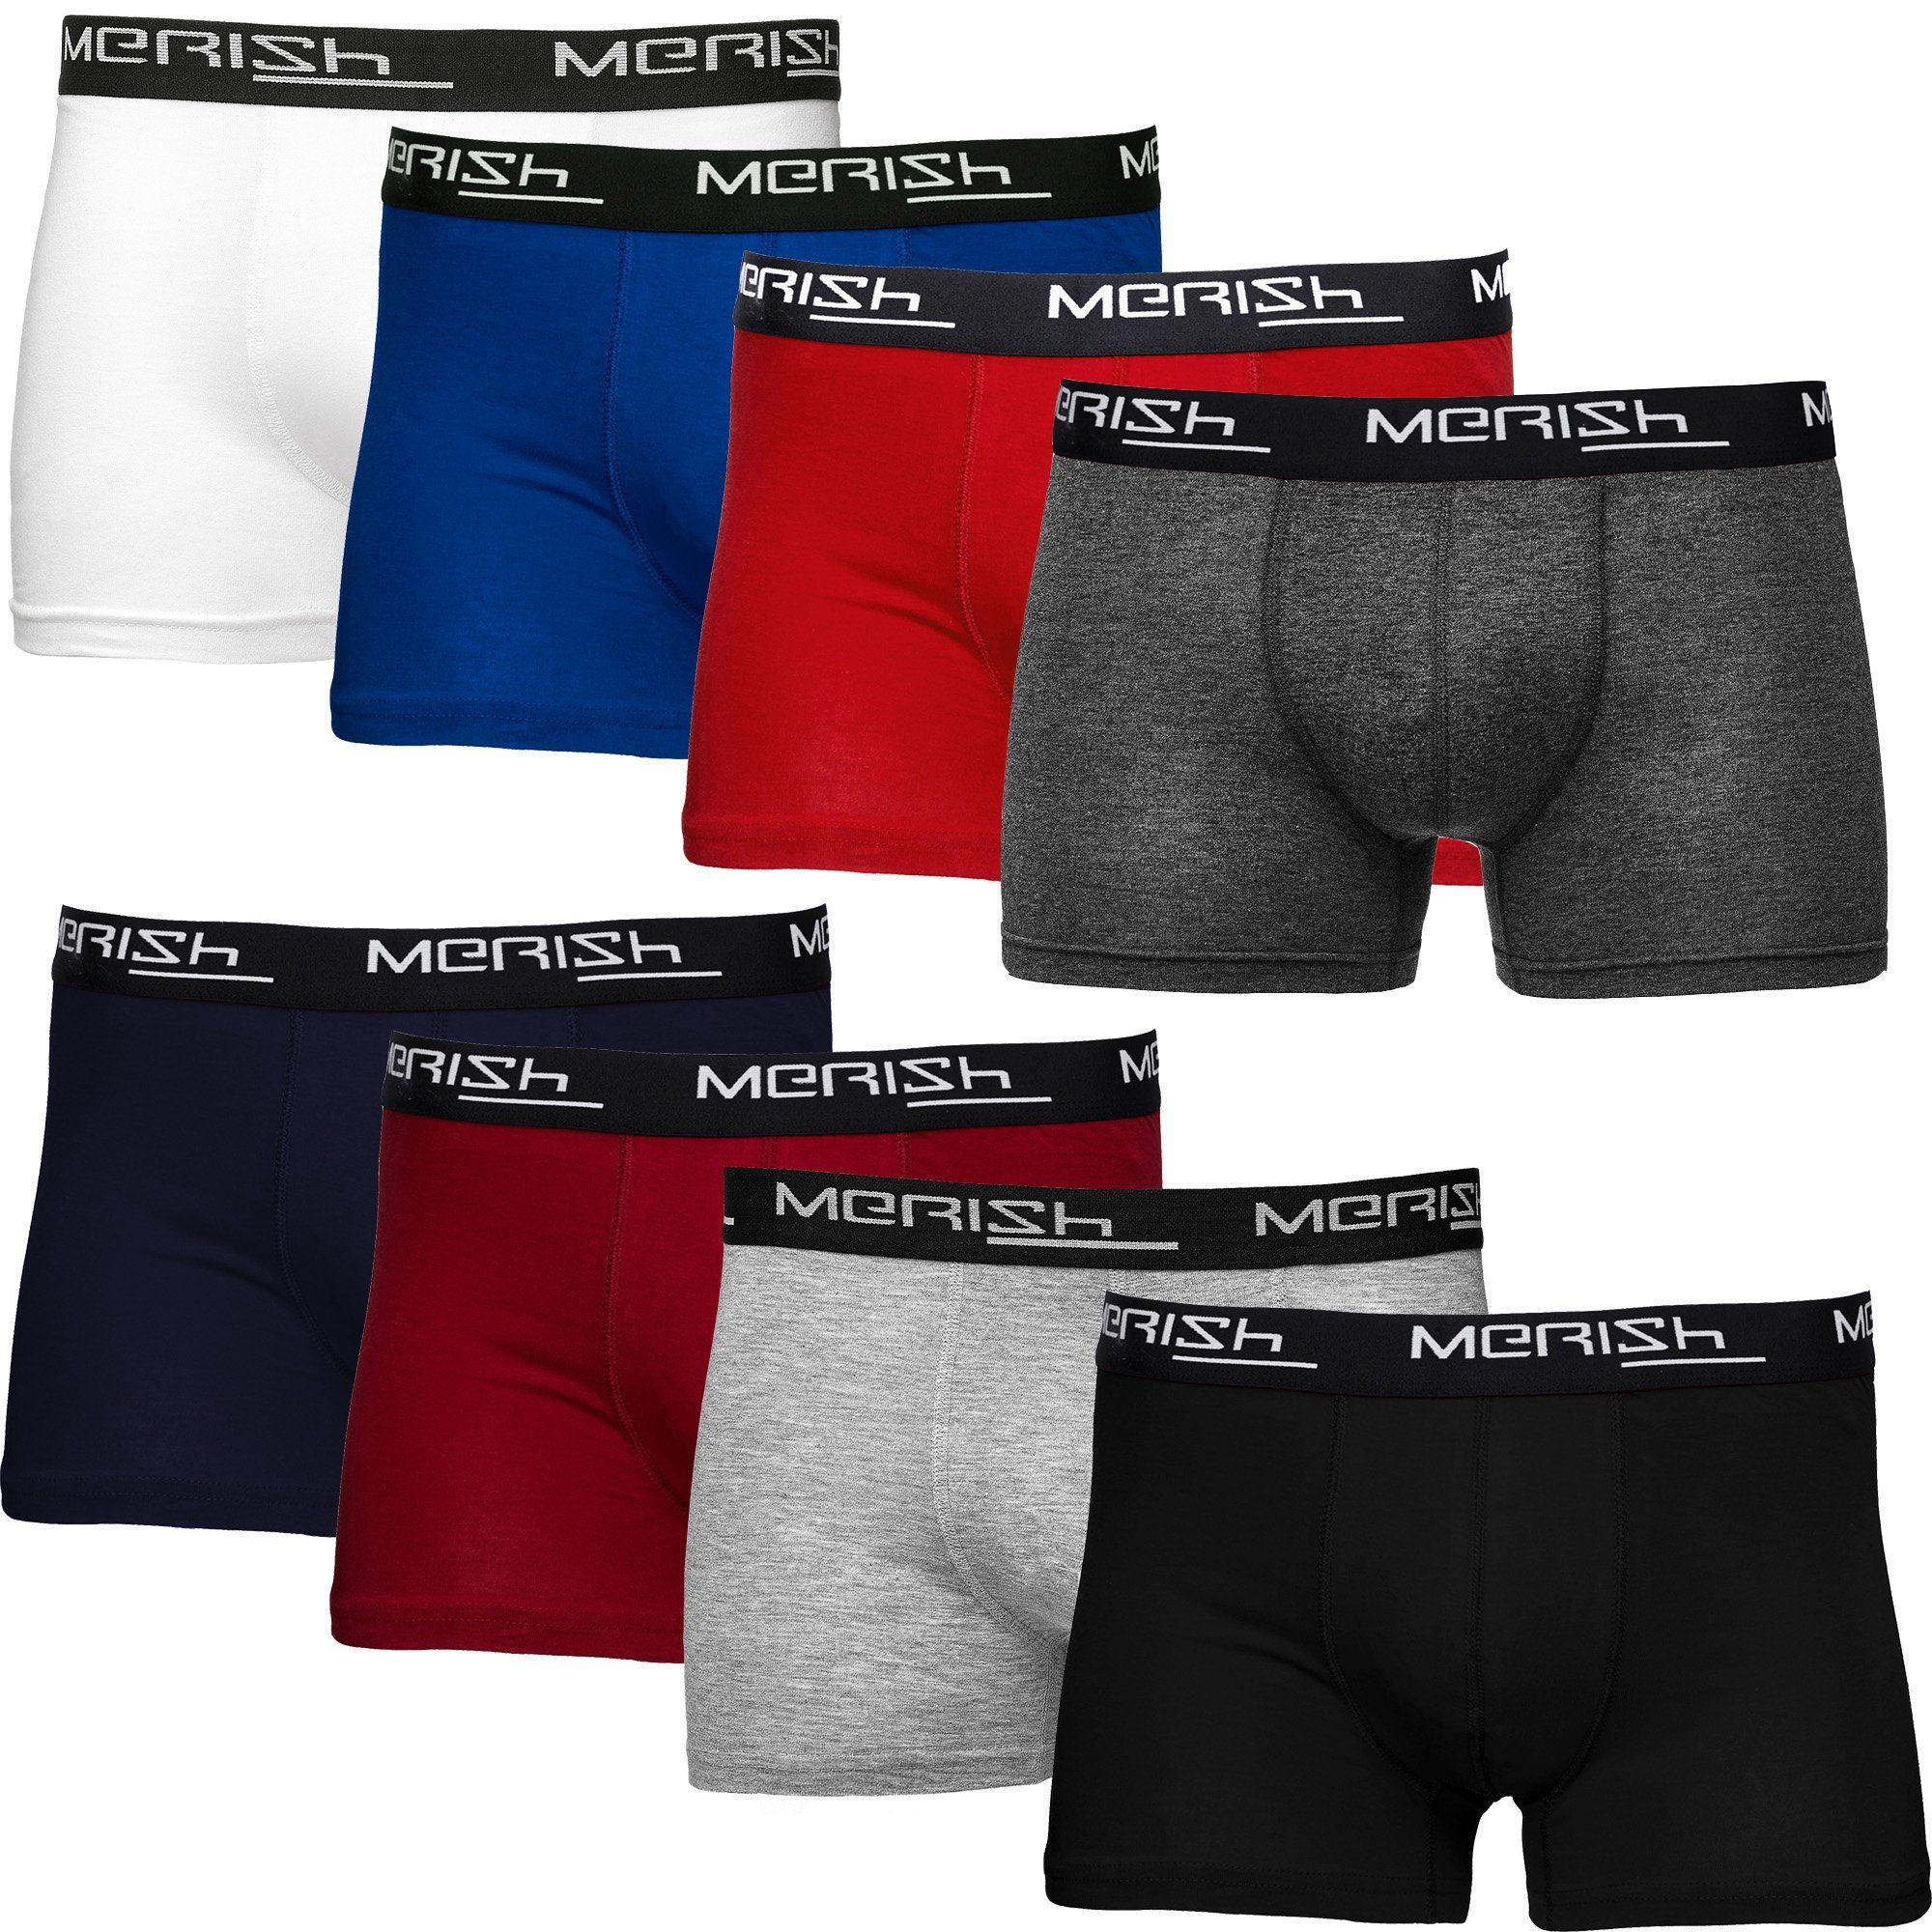 MERISH Boxershorts Herren Männer Unterhosen Baumwolle Premium Qualität perfekte Passform (Vorteilspack, 8er-Pack) S - 7XL 216d-mehrfarbig | Boxershorts